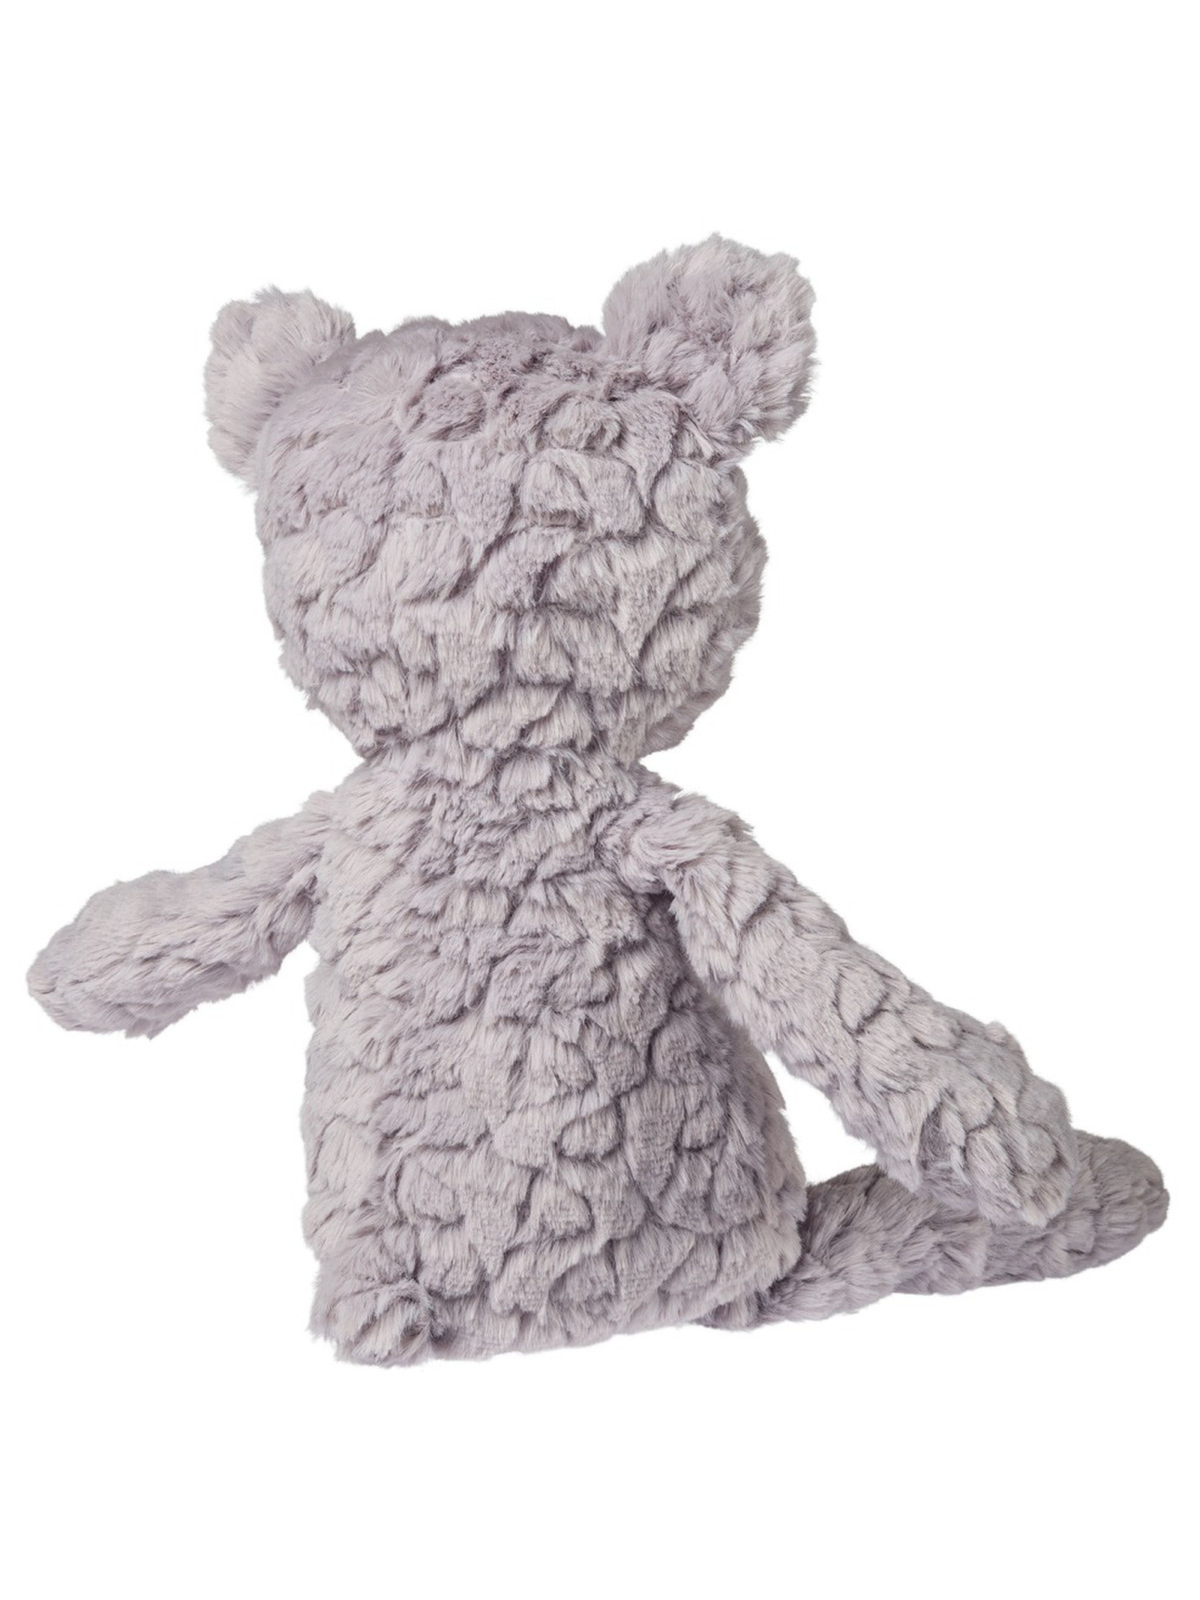 Medium Shadow Putty Bear Plush Toy